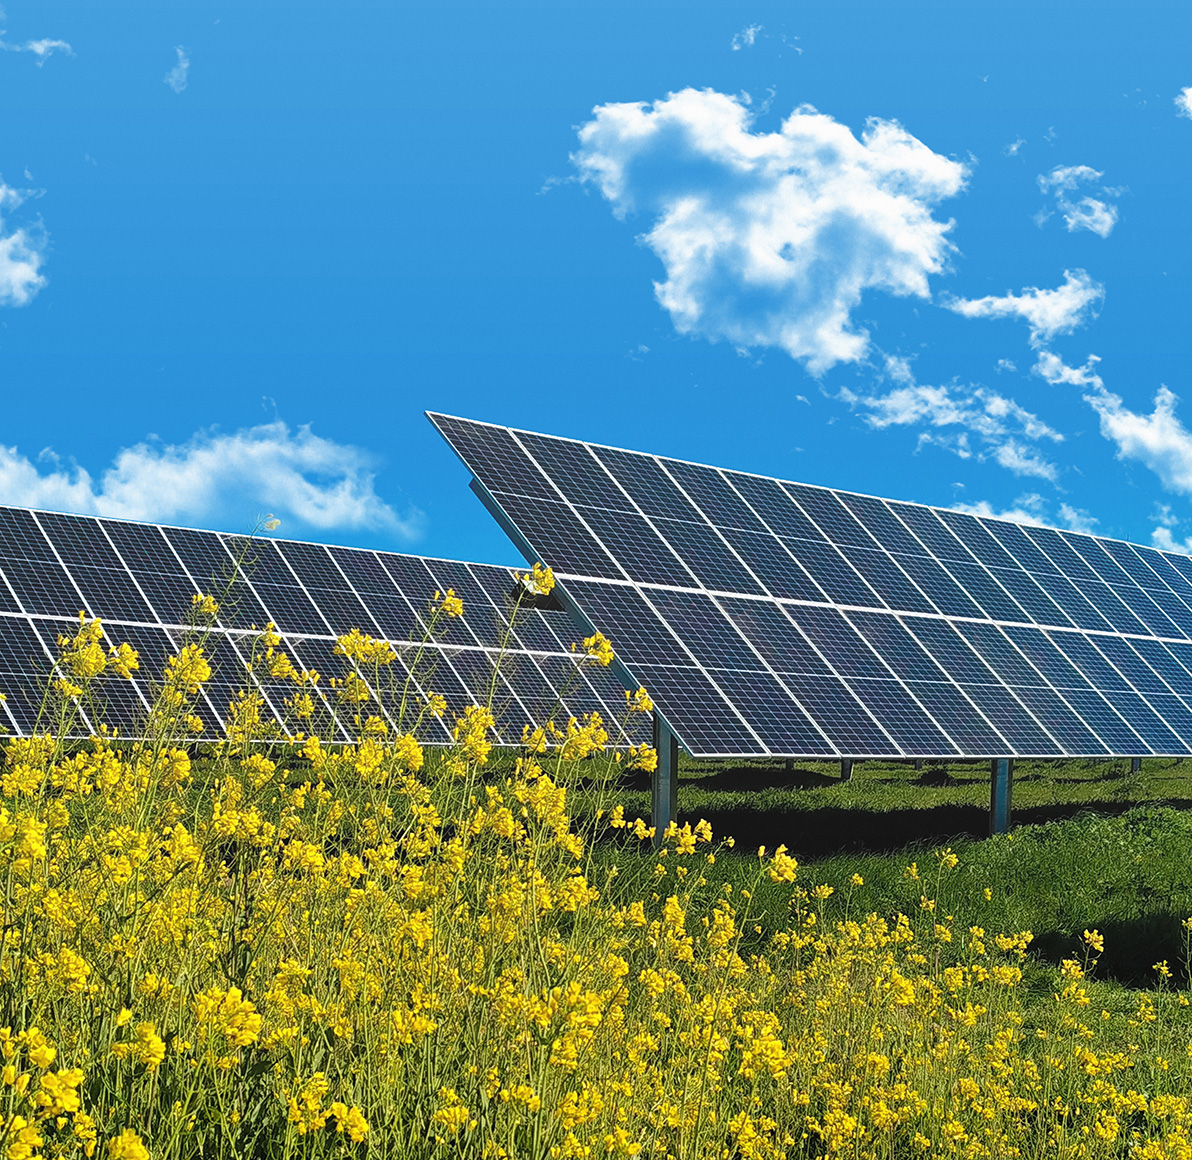 Planta fotovoltaica integrada en el entorno paisajístico